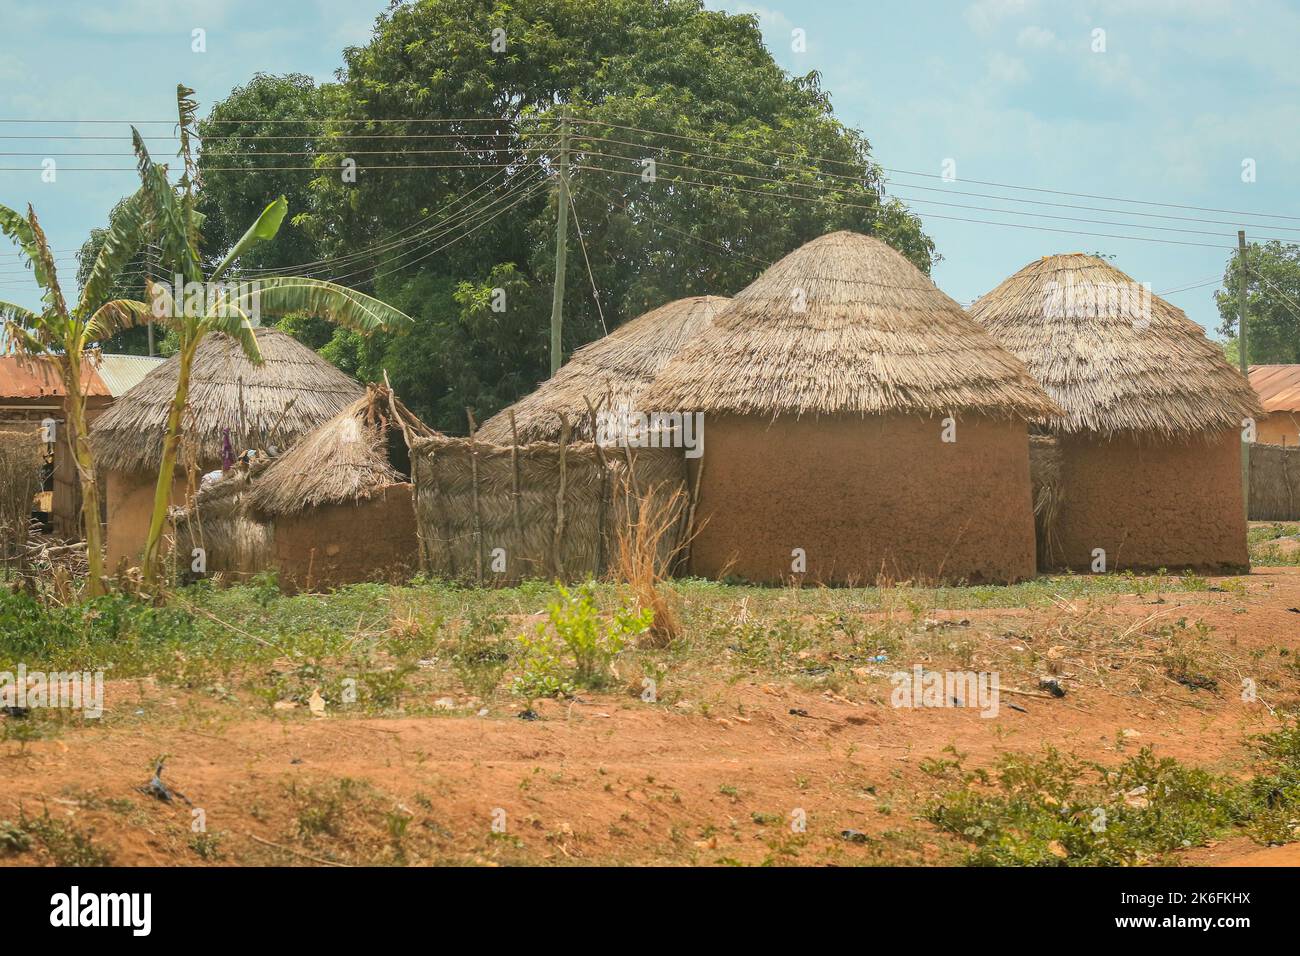 Edifici africani tradizionali realizzati da argilla e paglia nel villaggio del Ghana, Africa occidentale Foto Stock